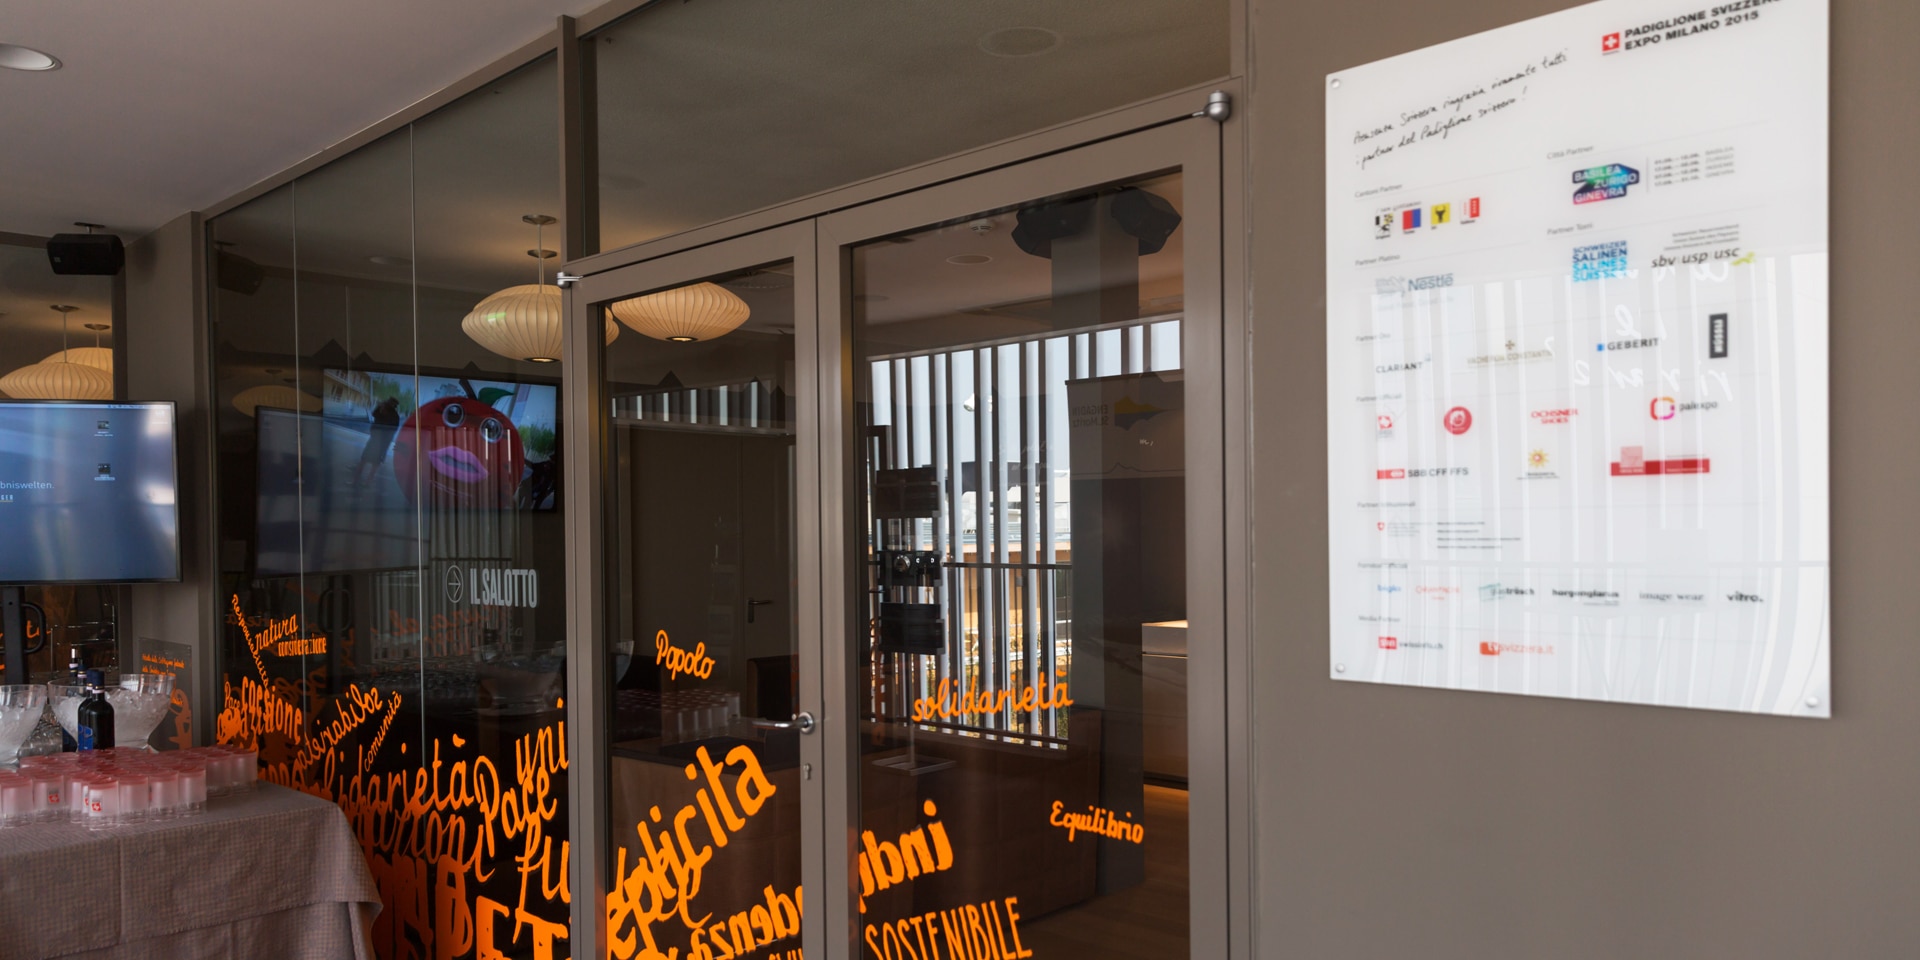 Eine weisse Tafel am Eingang eines Gebäudes nennt alle Partner des Schweizer Pavillons auf der Weltausstellung 2015 in Mailand.